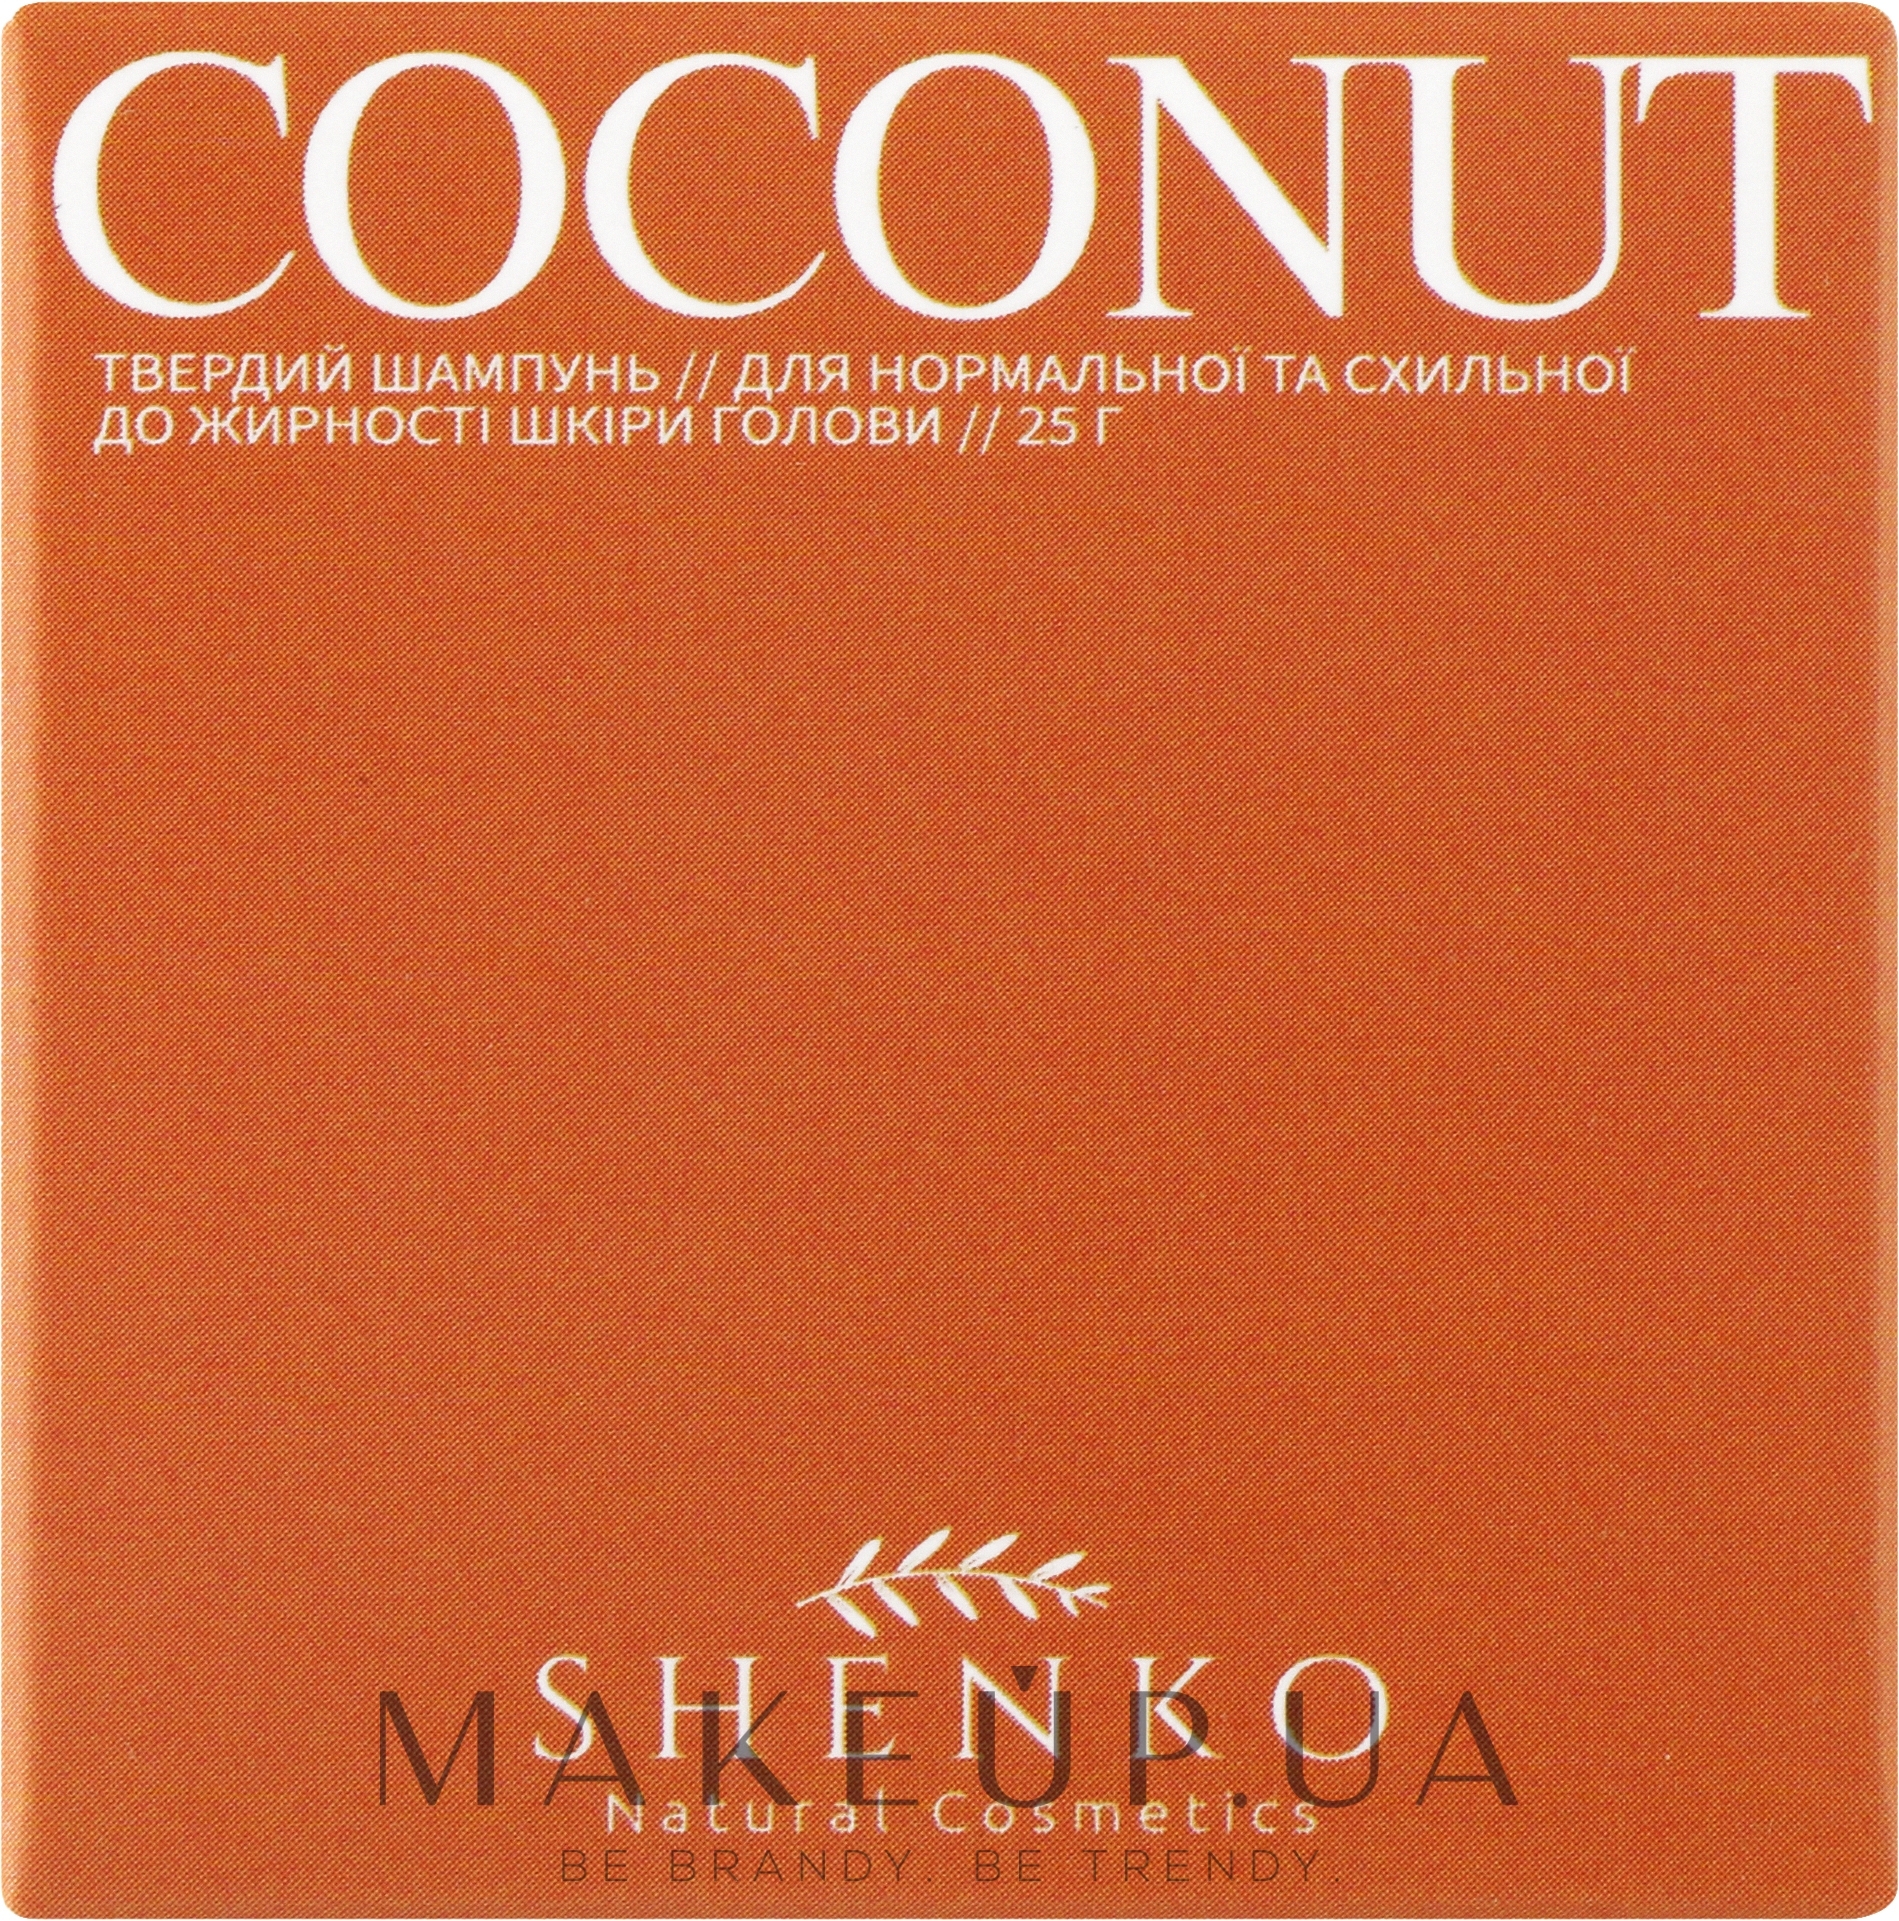 Твердый шампунь с биолипидным комплексом "Coconut" - Shenko Coconut Shampoo — фото 25g